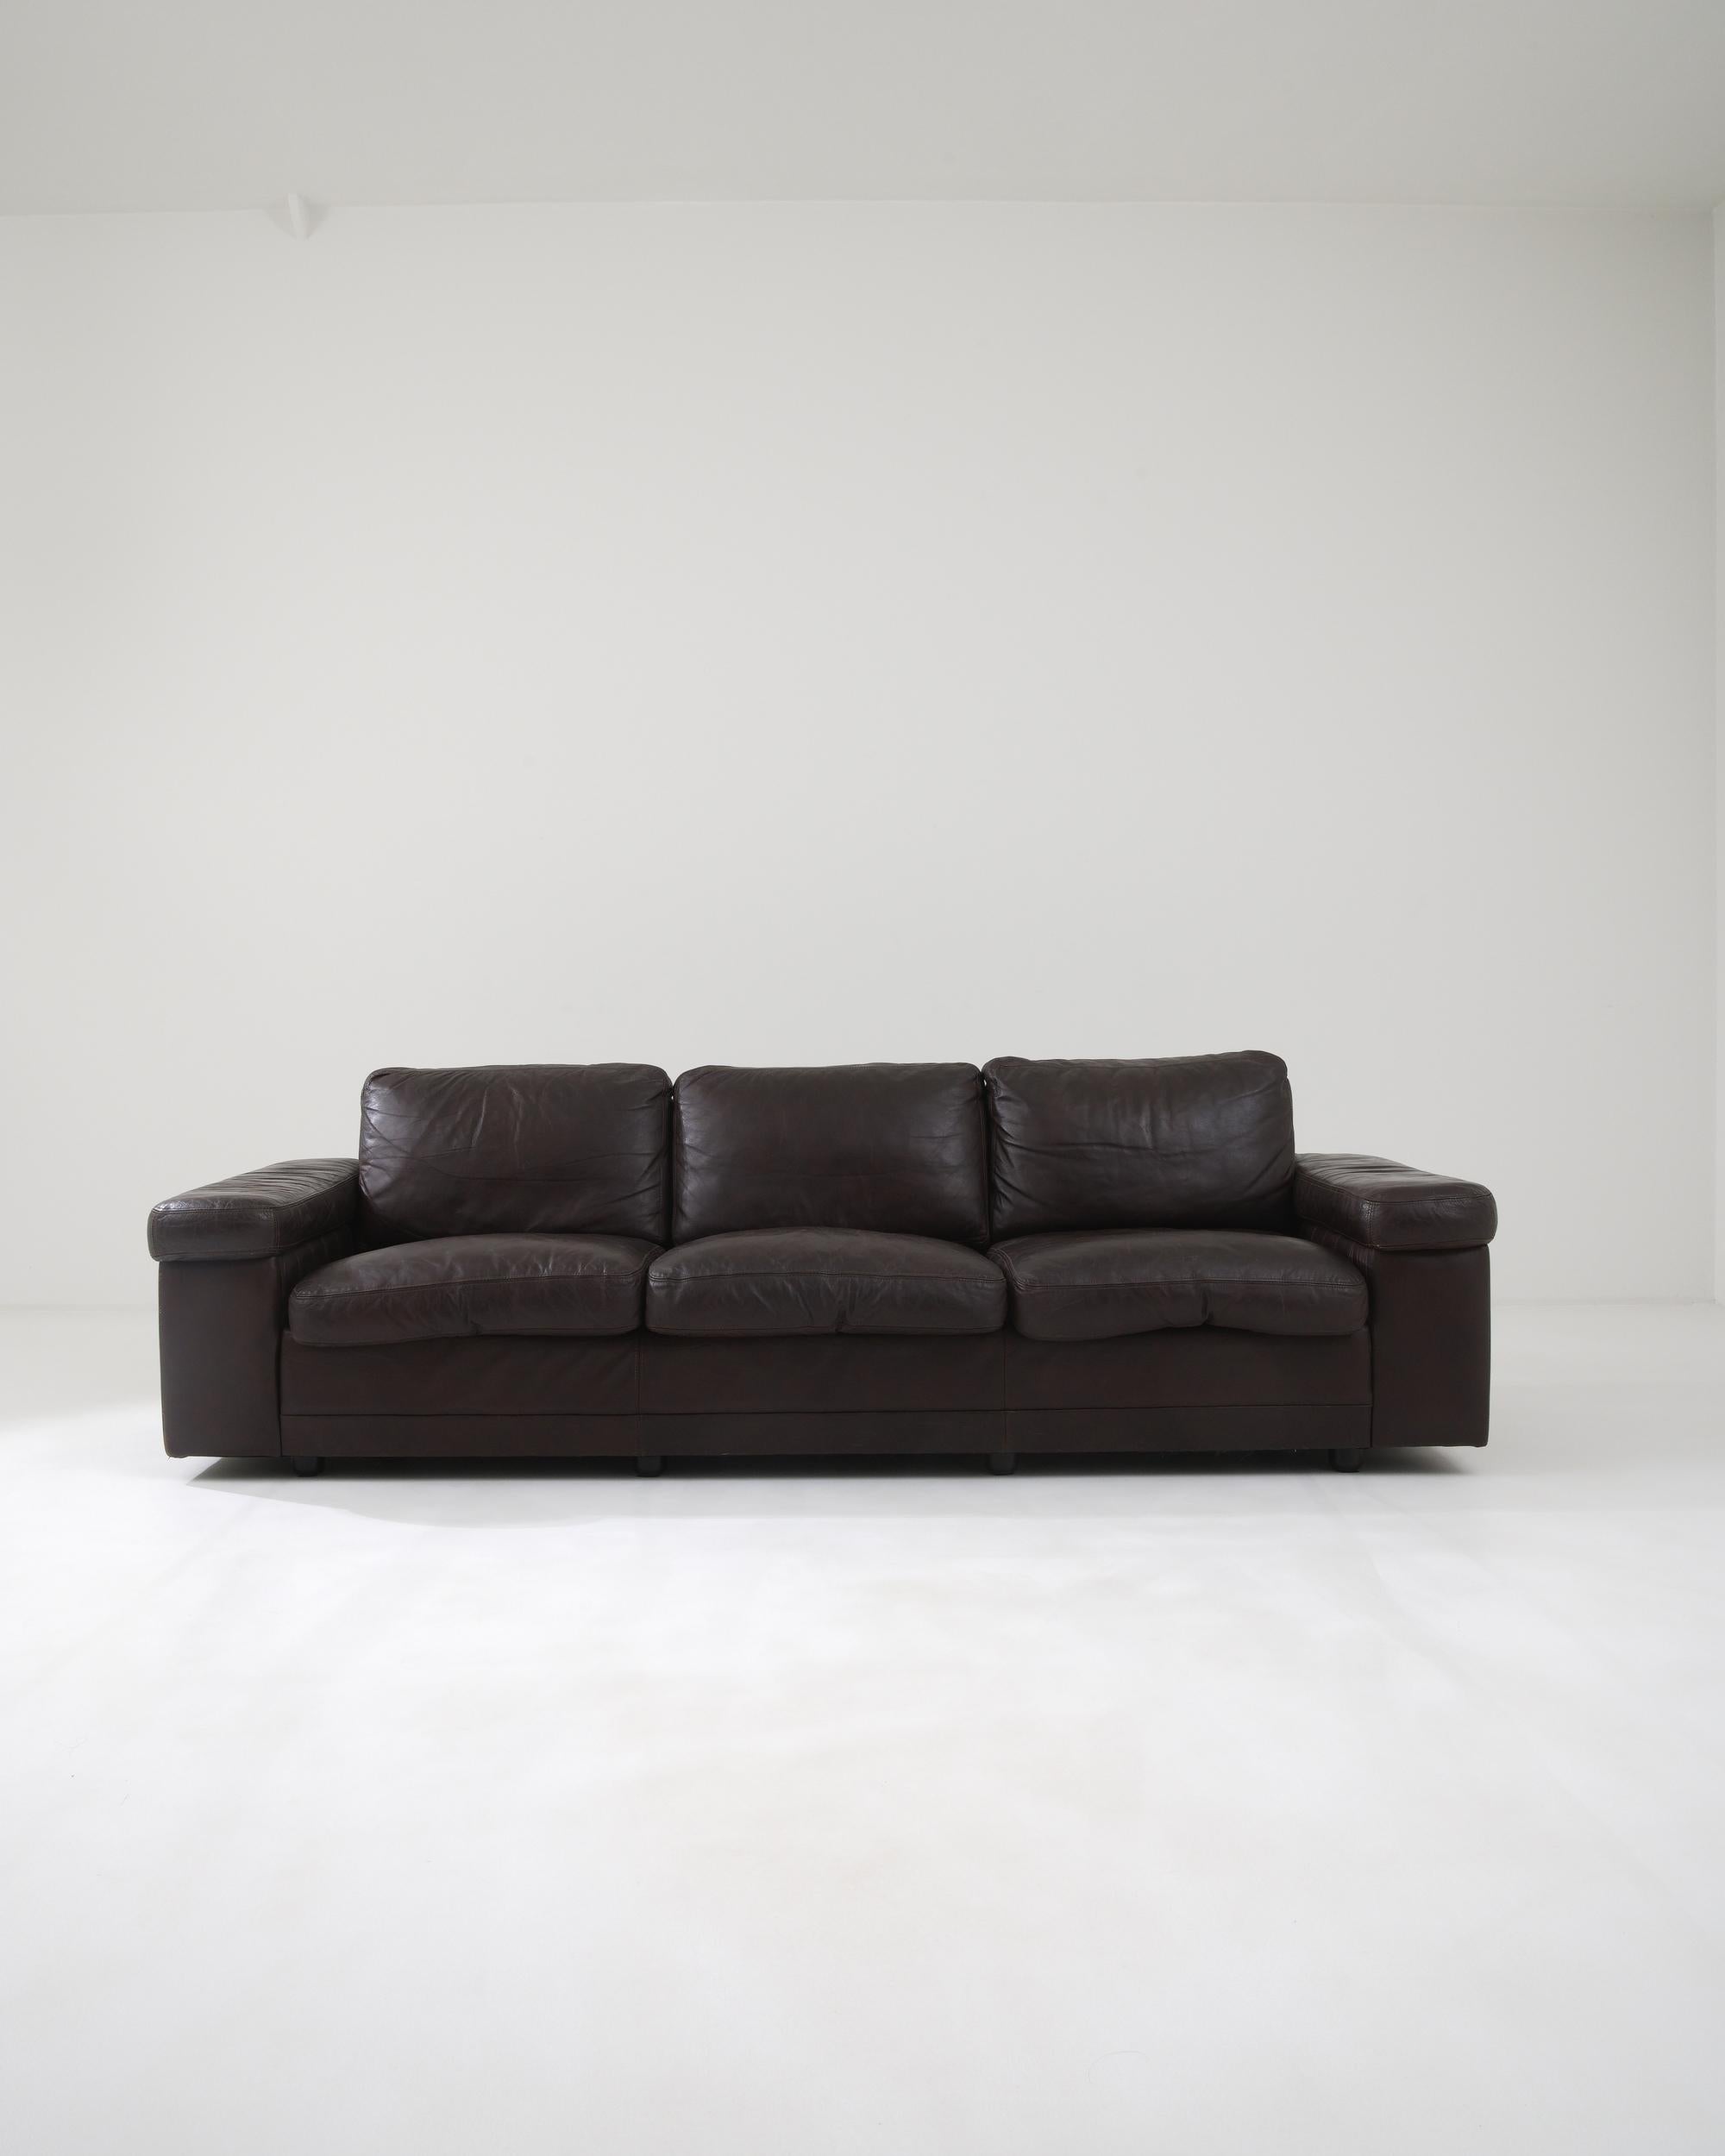 Dieses elegante Dreisitzer-Sofa wurde im 20. Jahrhundert in Deutschland hergestellt und strahlt eine klassische Ausstrahlung aus. Die weichen, mit luxuriösem, dunkelbraunem Leder umhüllten Kissen werden von breiten, geometrischen Armlehnen gestützt